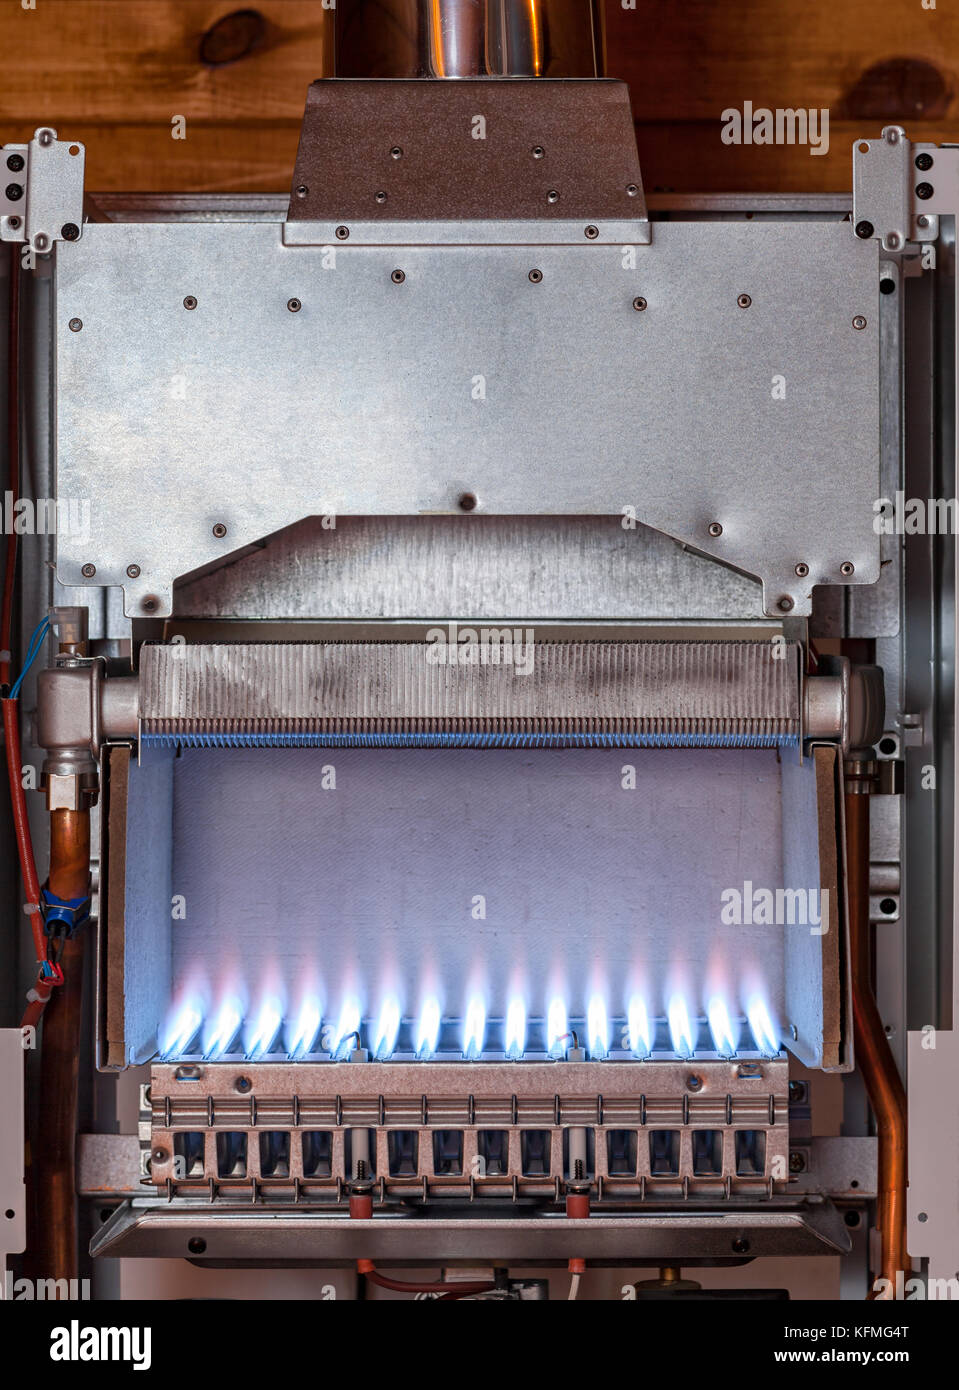 Flamme de gaz à l'intérieur de la chaudière à gaz Photo Stock - Alamy